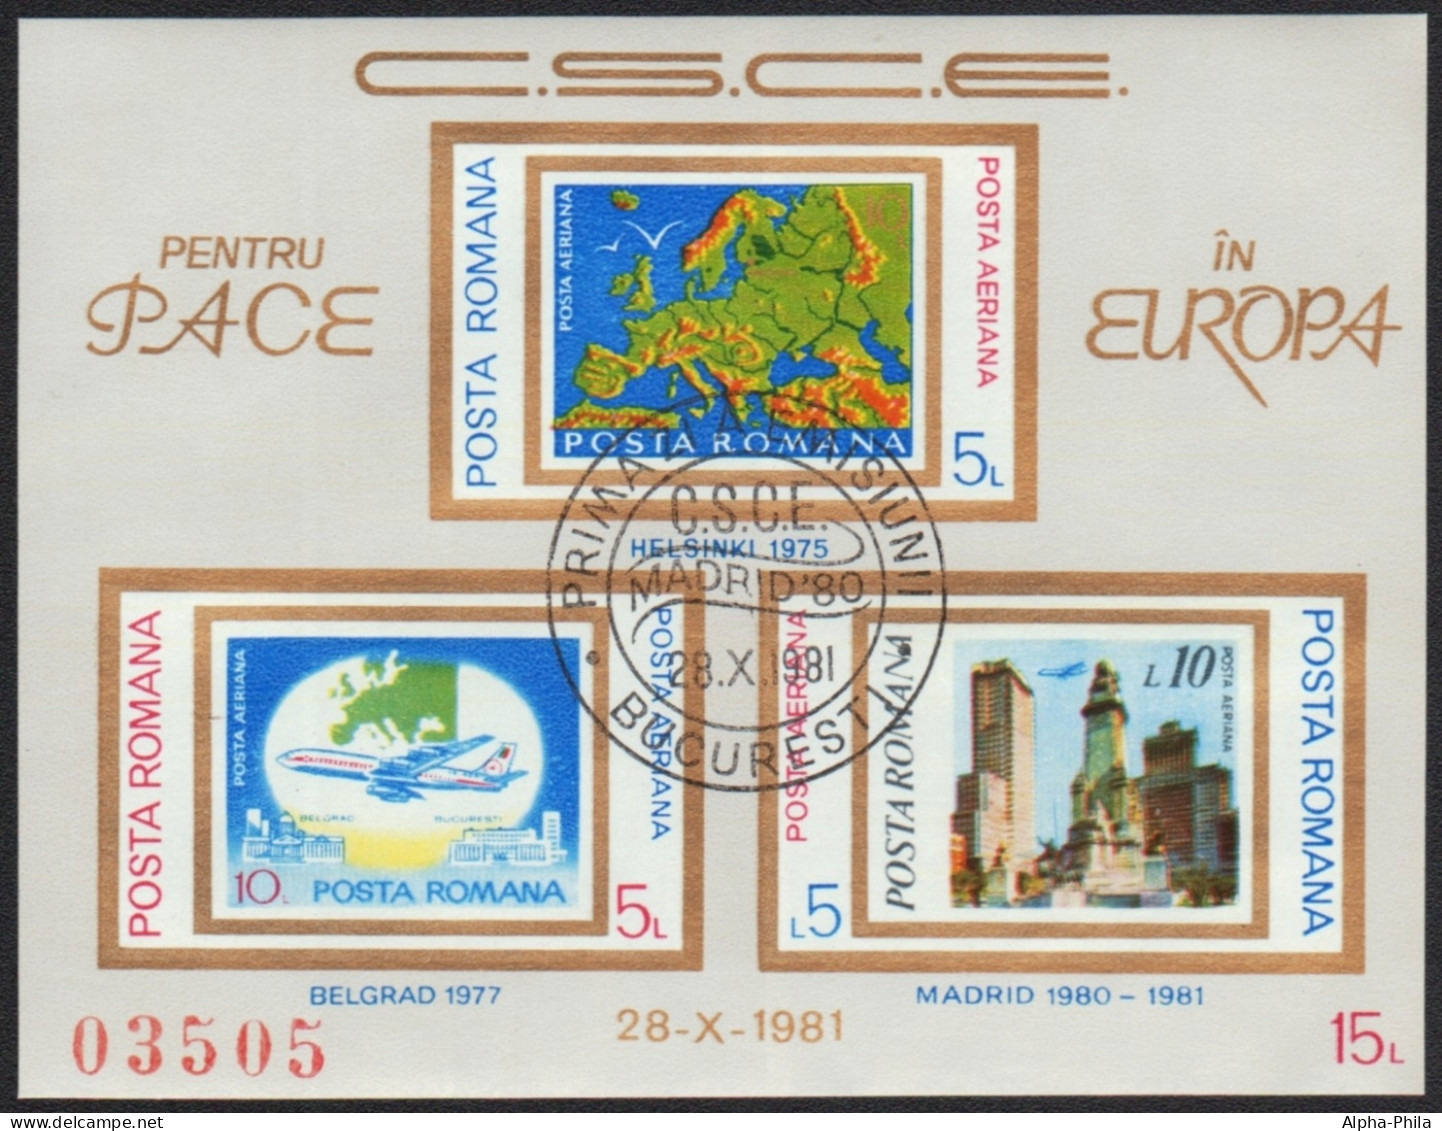 Rumänien 1981 - Mi-Nr. Block 183 Gest / Used - Europa - KSZE - Used Stamps